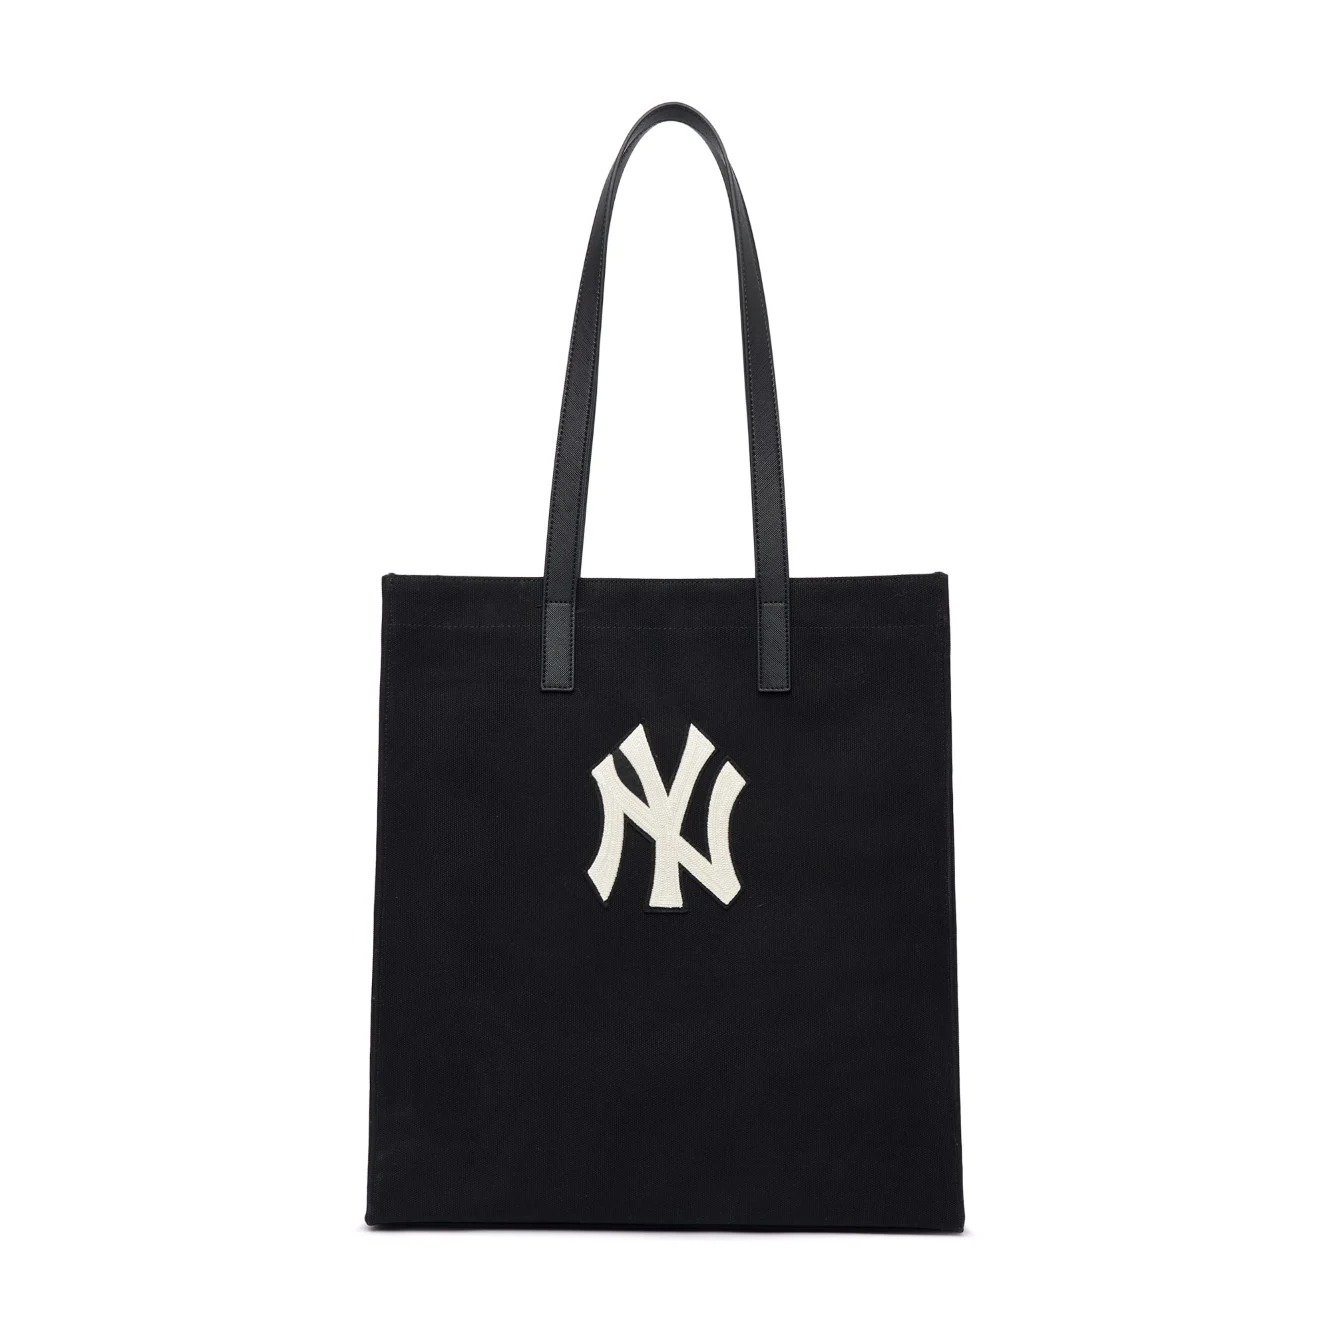 Mua Túi Tote MLB Canvas Tote Bag New York Yankees 3AORM022N50BKS Màu Đen   MLB  Mua tại Vua Hàng Hiệu h043199